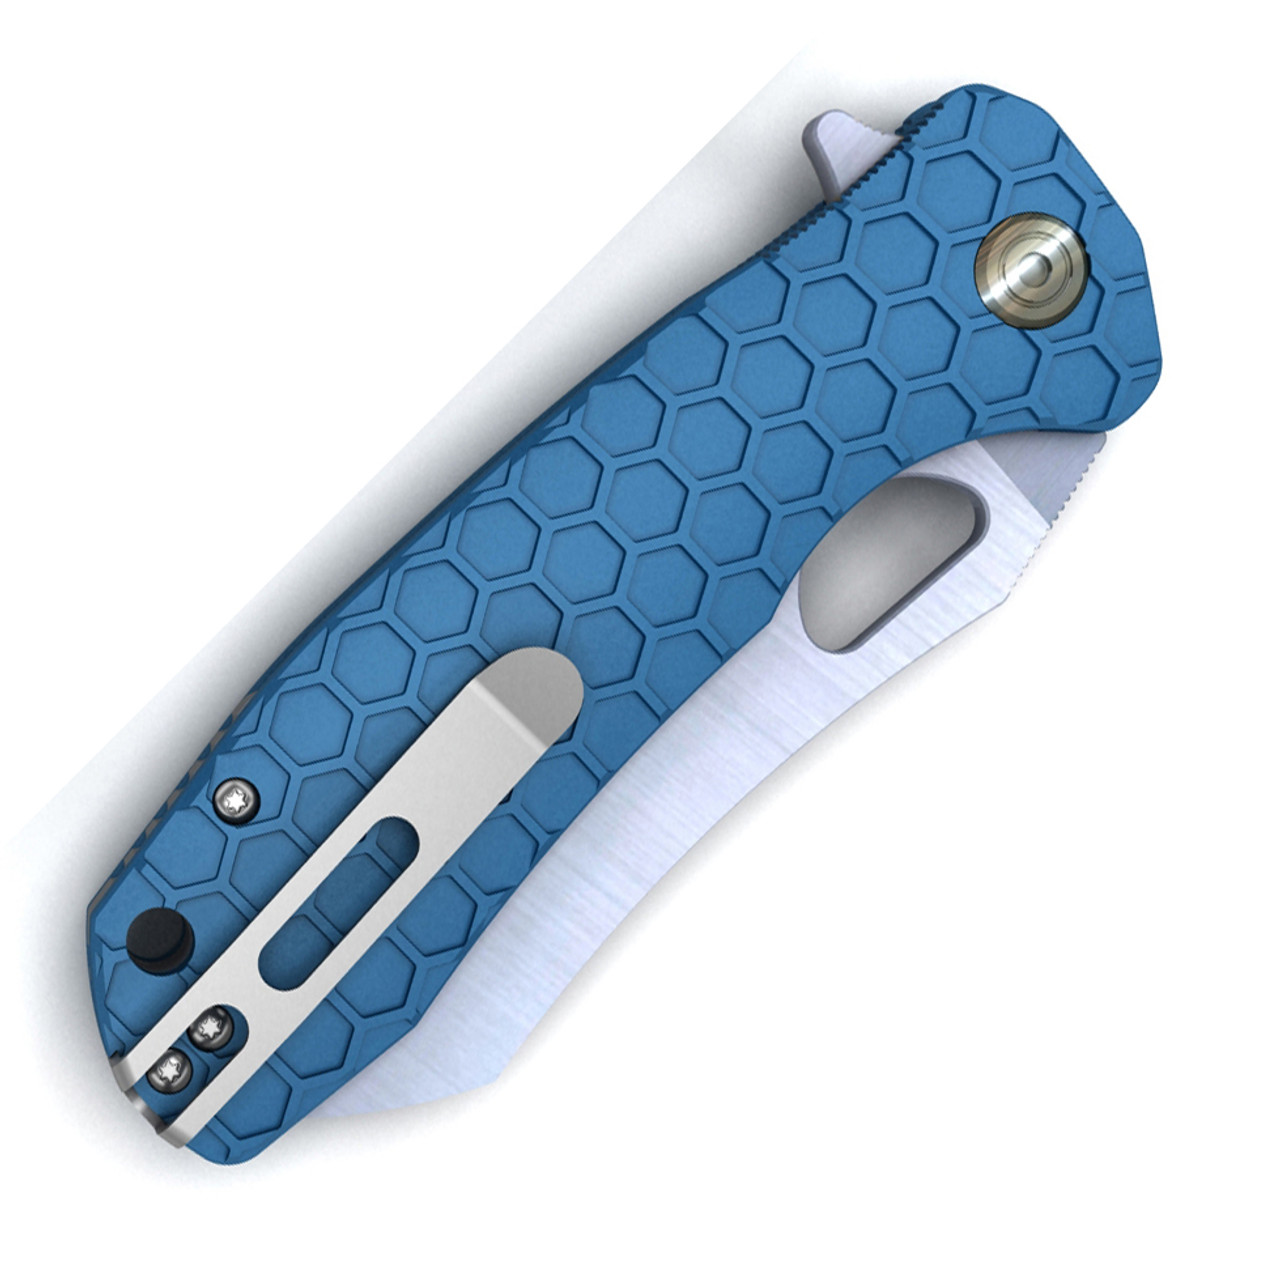 Honey Badger Knives Small Warncleaver Flipper HB1048, 2.75" 8Cr13MoV Satin Warncleaver Plain Blade, Blue FRN Handle